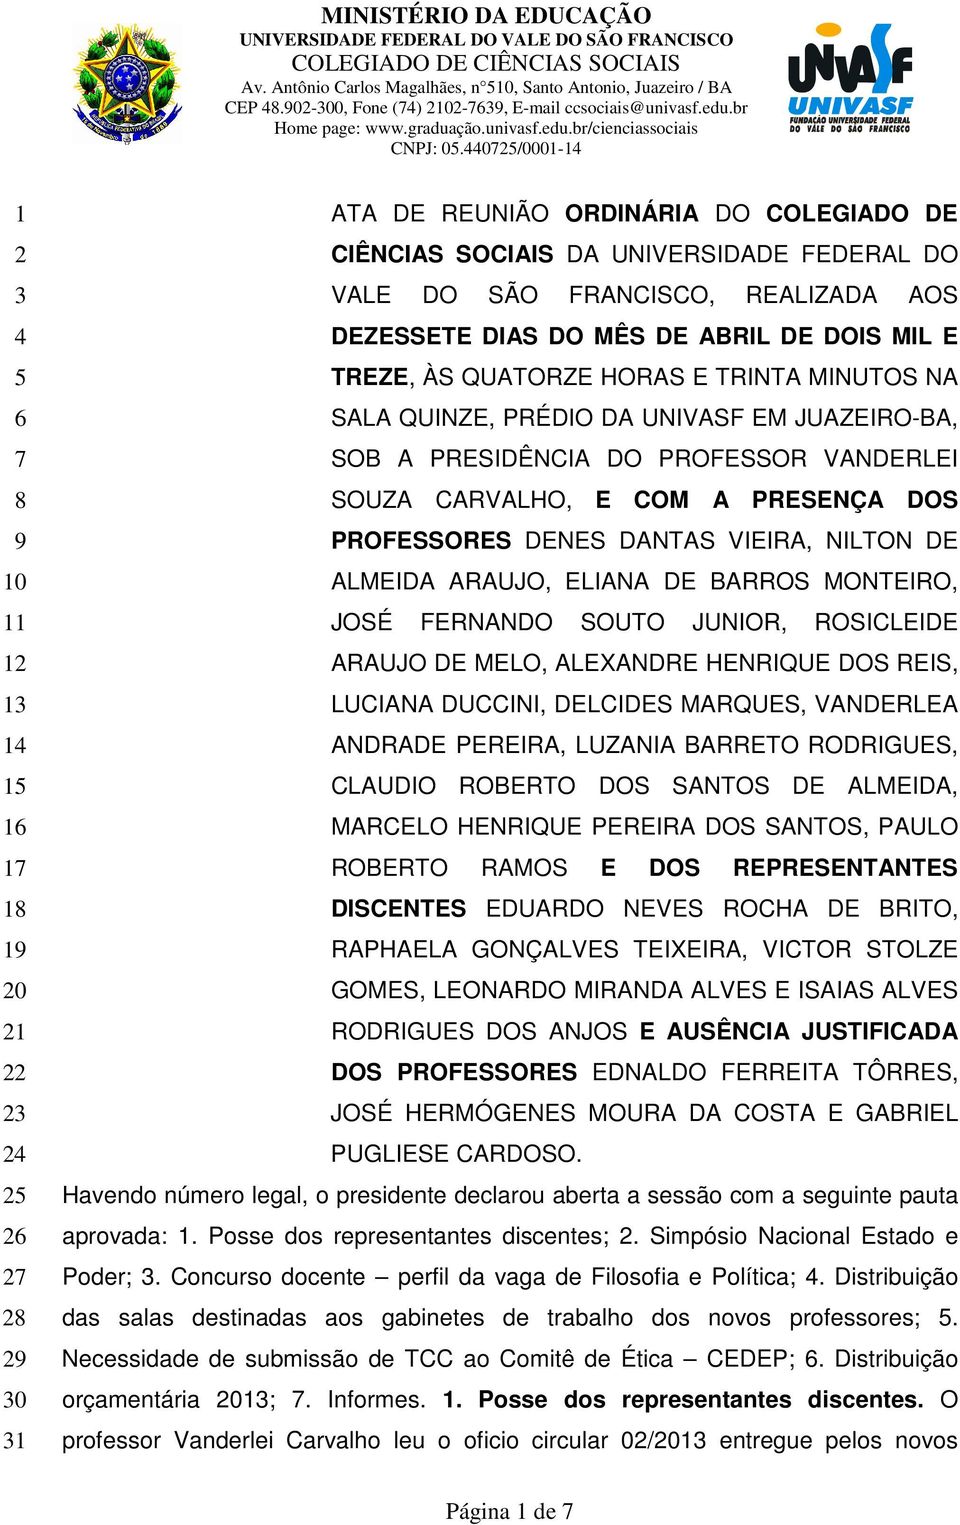 CARVALHO, E COM A PRESENÇA DOS PROFESSORES DENES DANTAS VIEIRA, NILTON DE ALMEIDA ARAUJO, ELIANA DE BARROS MONTEIRO, JOSÉ FERNANDO SOUTO JUNIOR, ROSICLEIDE ARAUJO DE MELO, ALEXANDRE HENRIQUE DOS